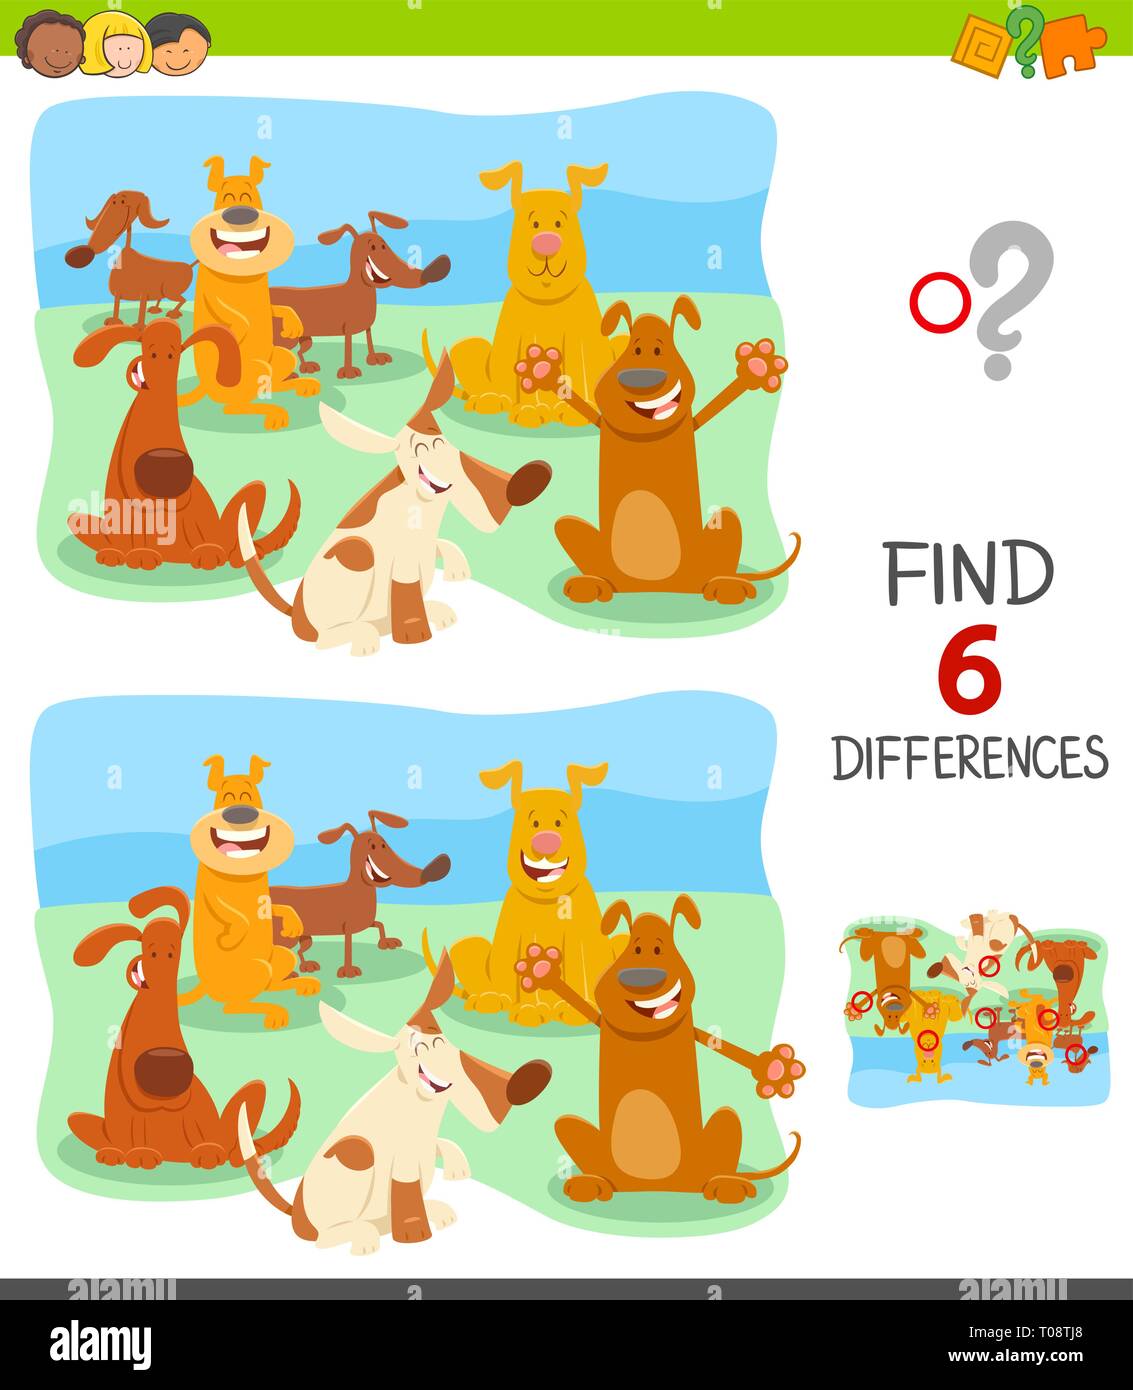 Illustrazione del fumetto di trovare 6 differenze tra le immagini del gioco educativo per bambini con cani felici Illustrazione Vettoriale